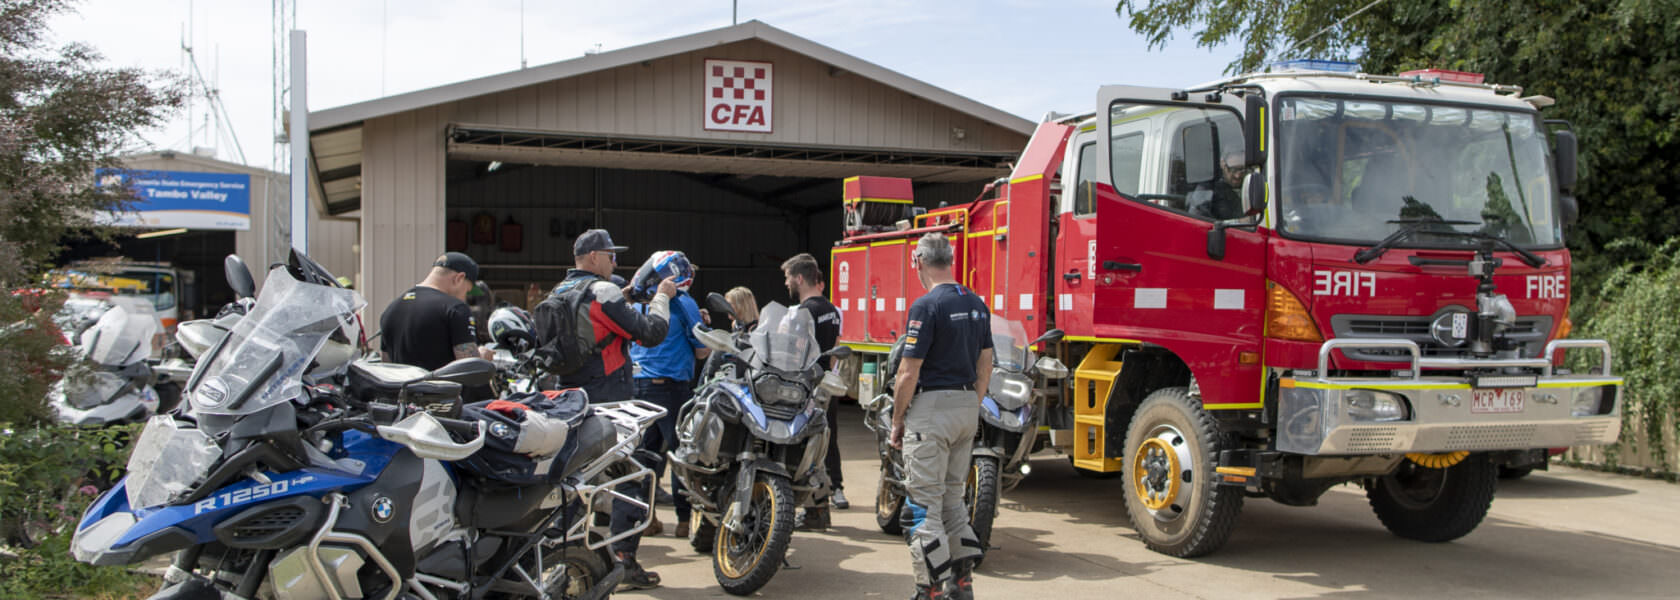 tournee charité BMW Motorrad WorldSBK Australie incendies